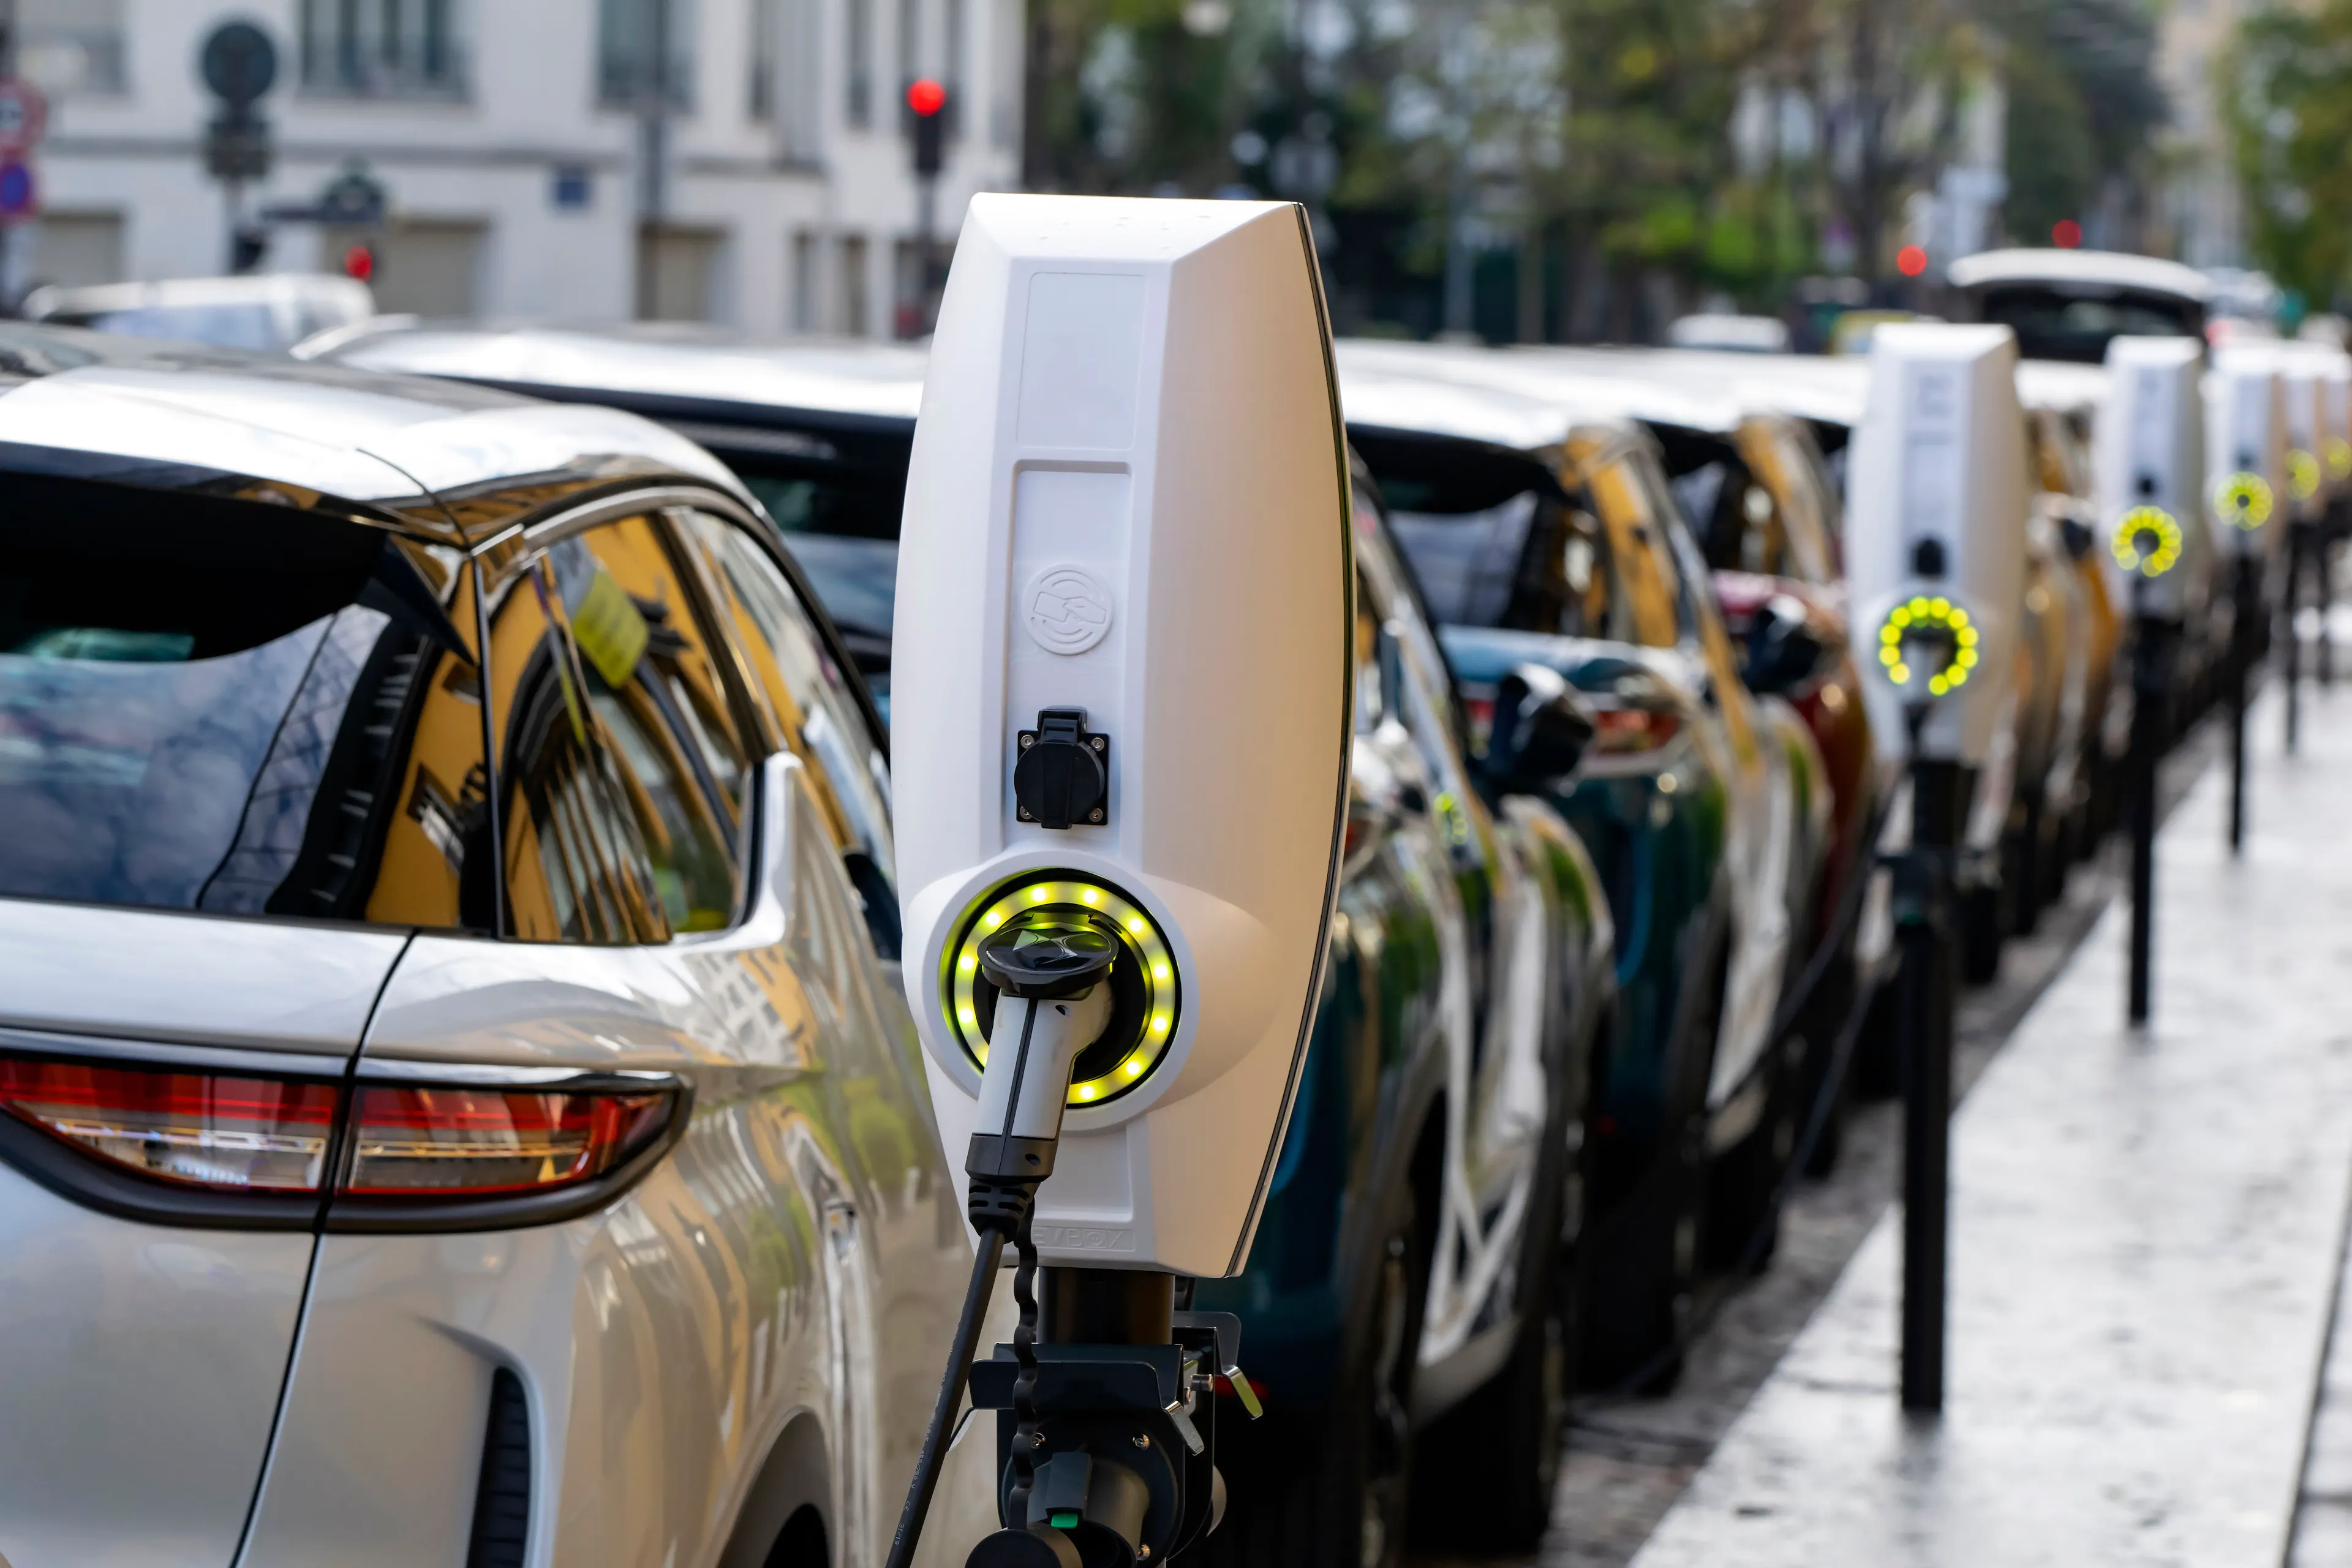 D’ici 2035, il faudra installer près de 32 000 bornes de recharge de véhicules électriques en Bourgogne-Franche-Comté pour faire face au besoin des usagers. Photo : DR